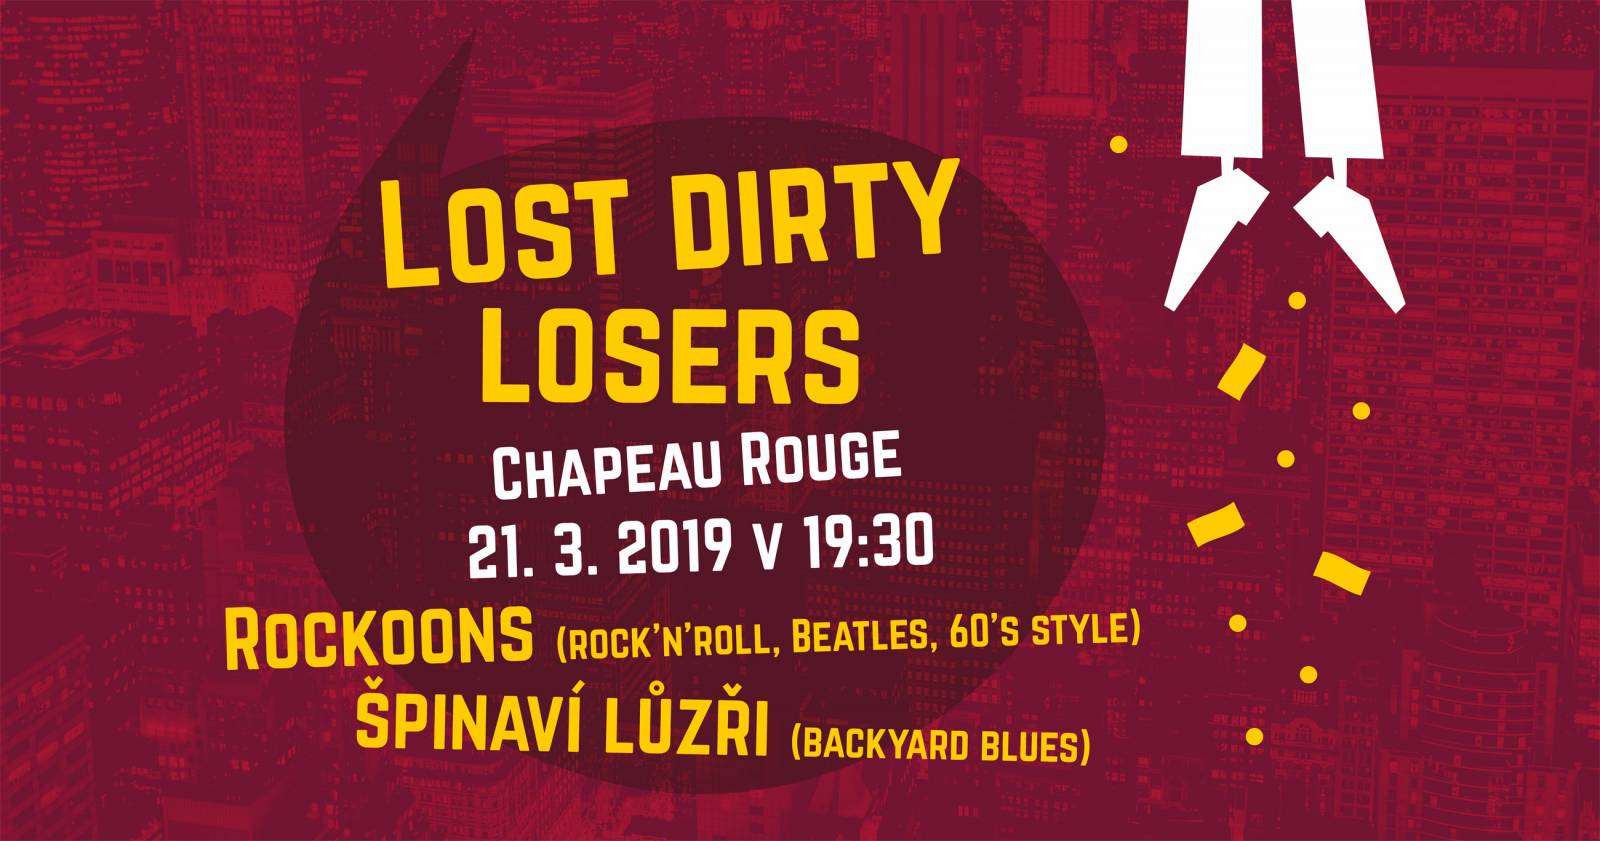 Špinaví lůzři v Chapeau Rouge: Žádný křest alba, ale pouze nalezení songů určených do odpadu